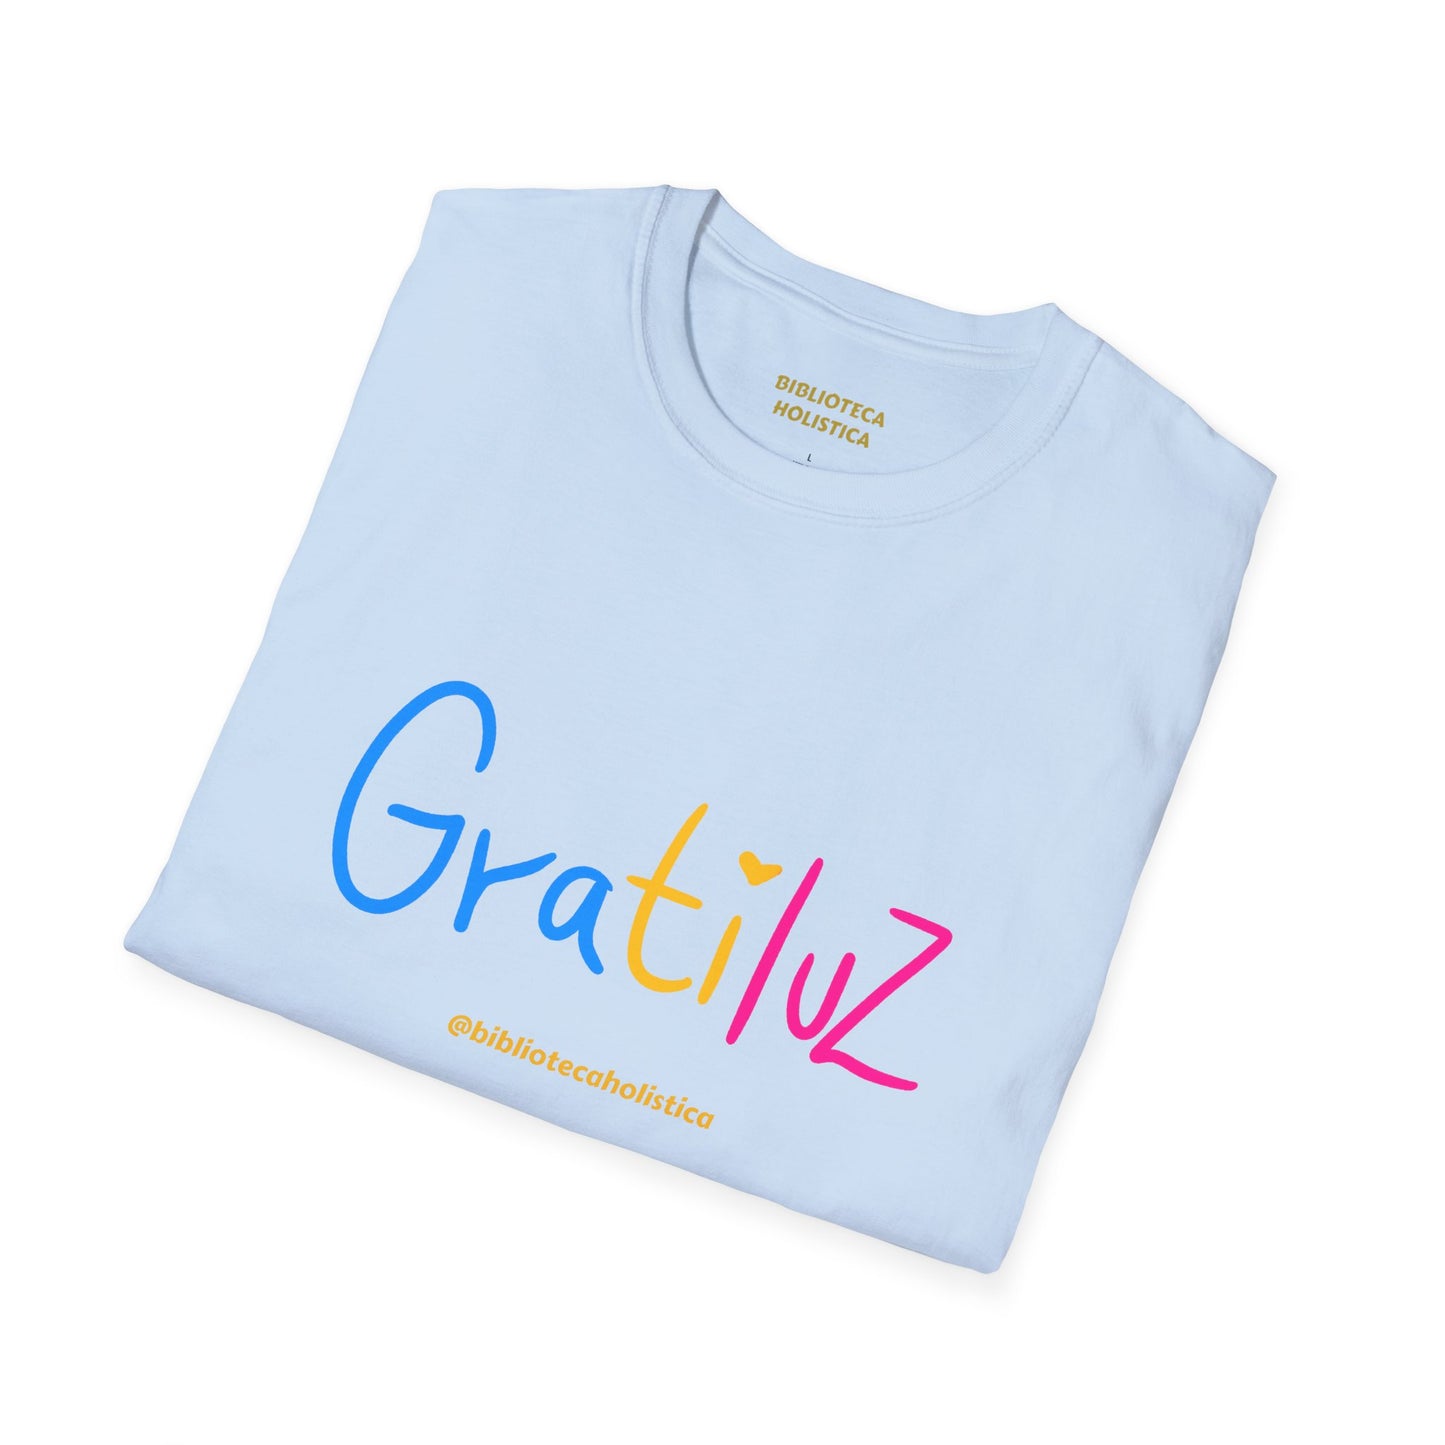 Camiseta "GRATILUZ"